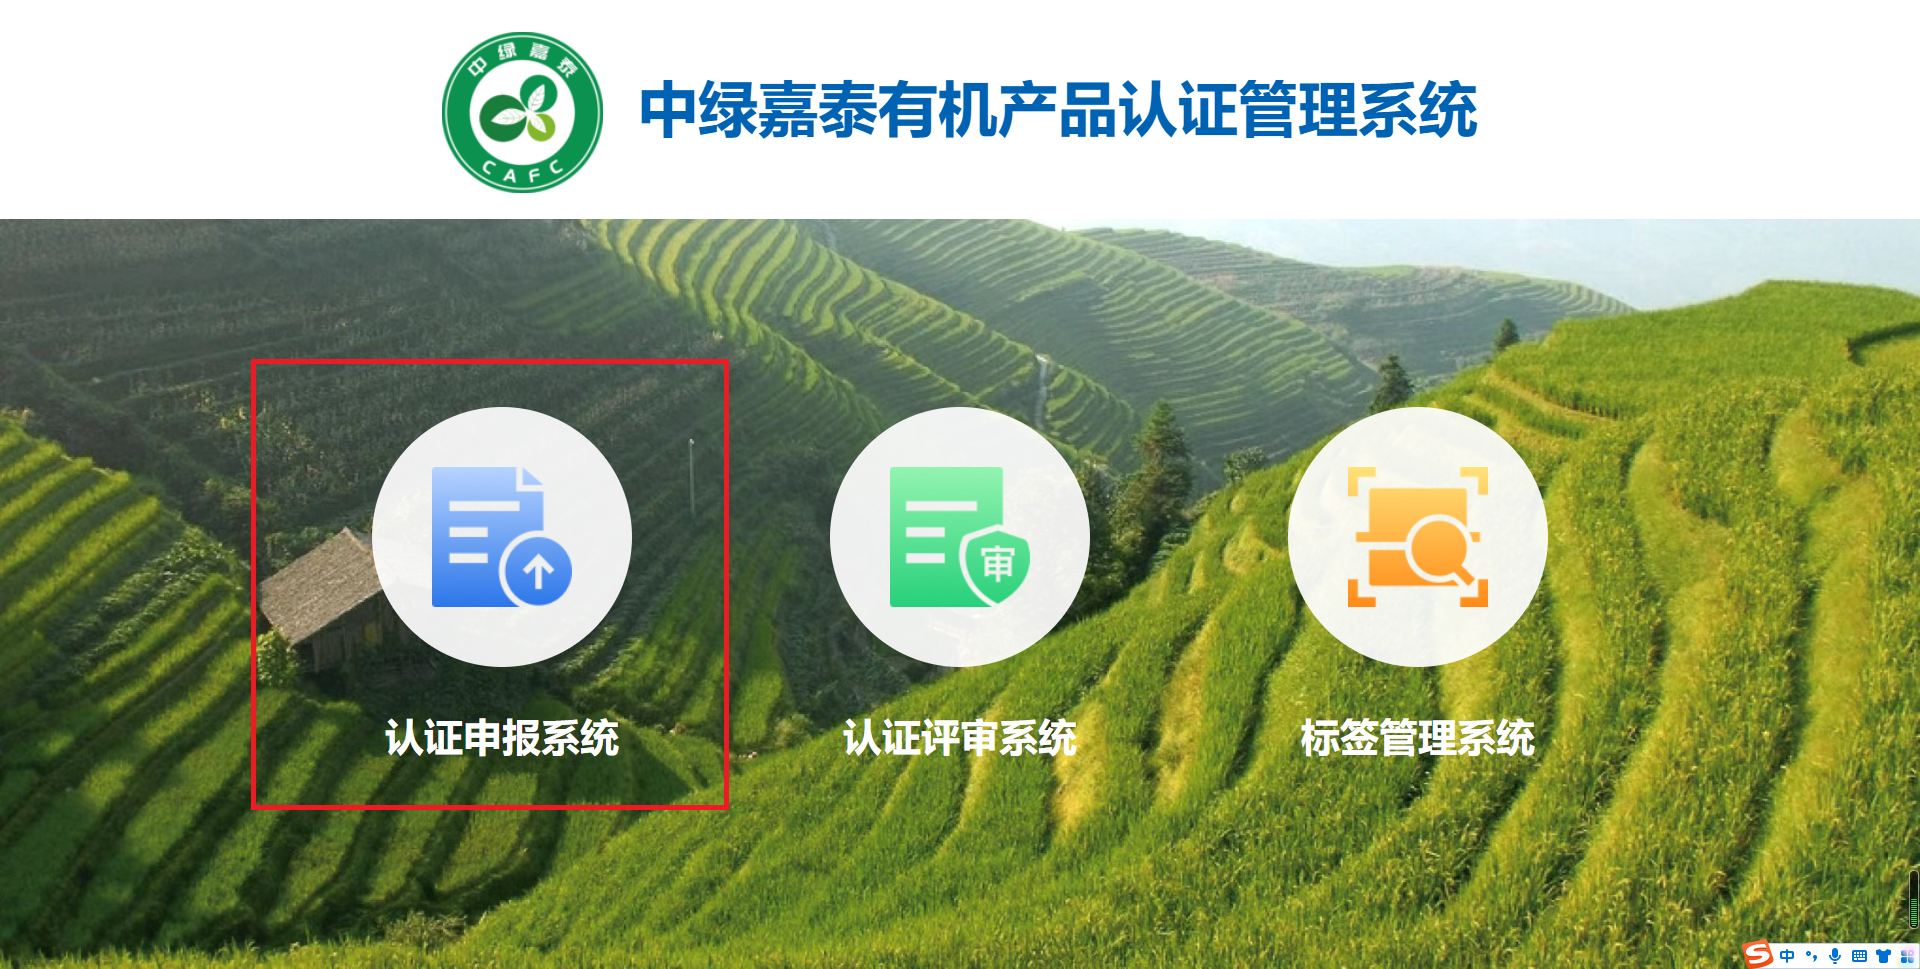 中绿嘉泰有机产品认证管理系统登录界面.png